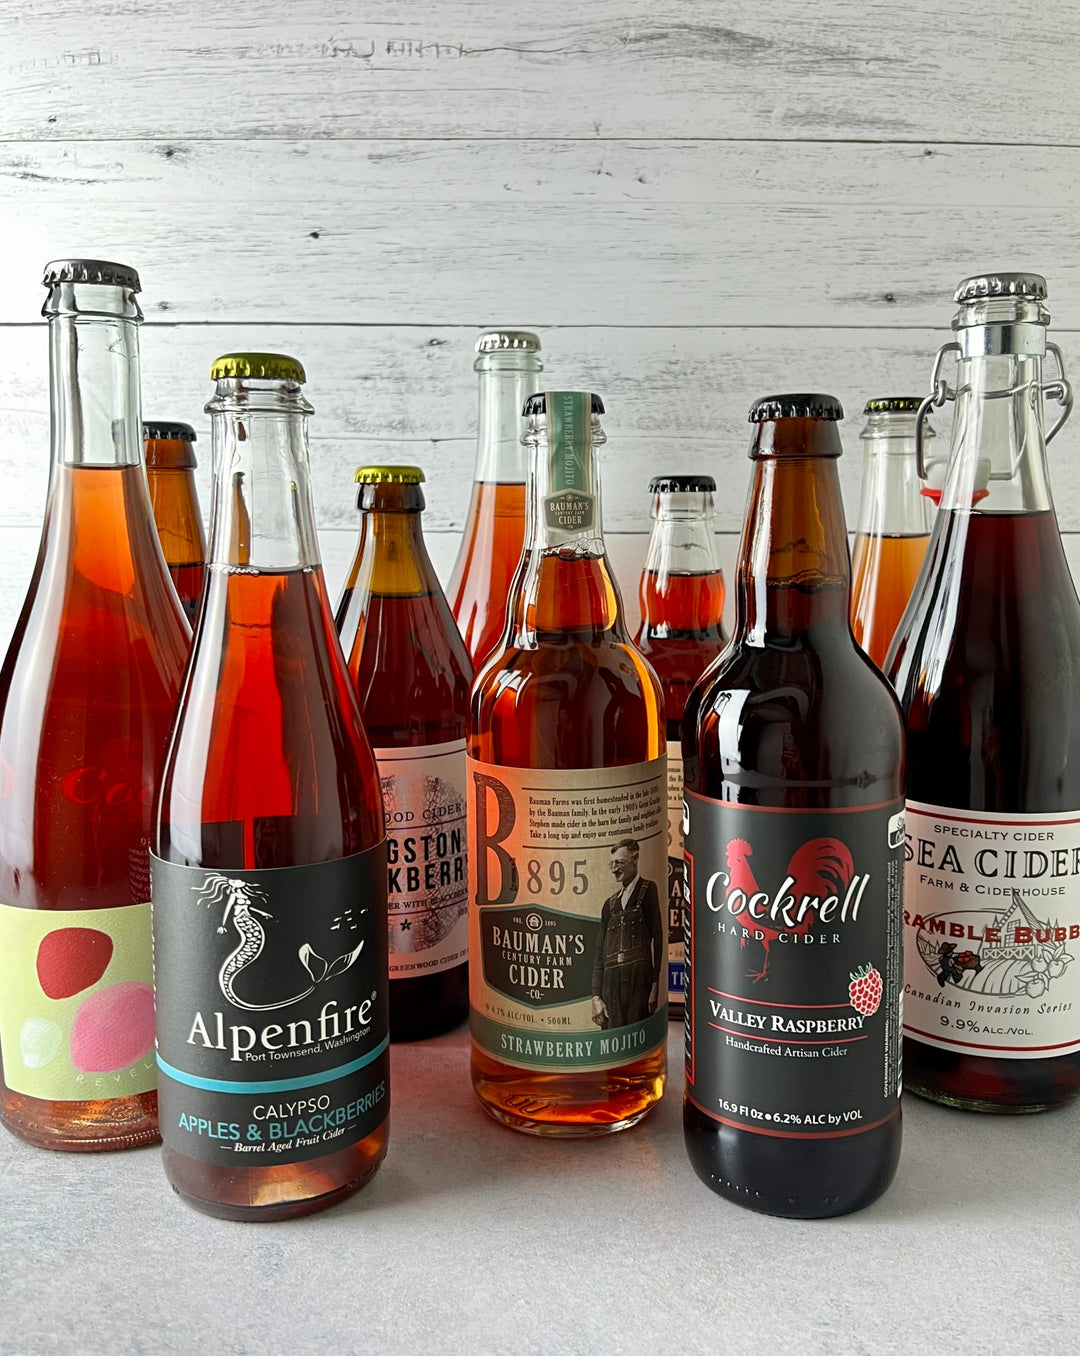 Multiple bottles of fruited cider, including Revel, Alpenfire, Bauman's, Cockrell, Sea Cider, and Greenwood 